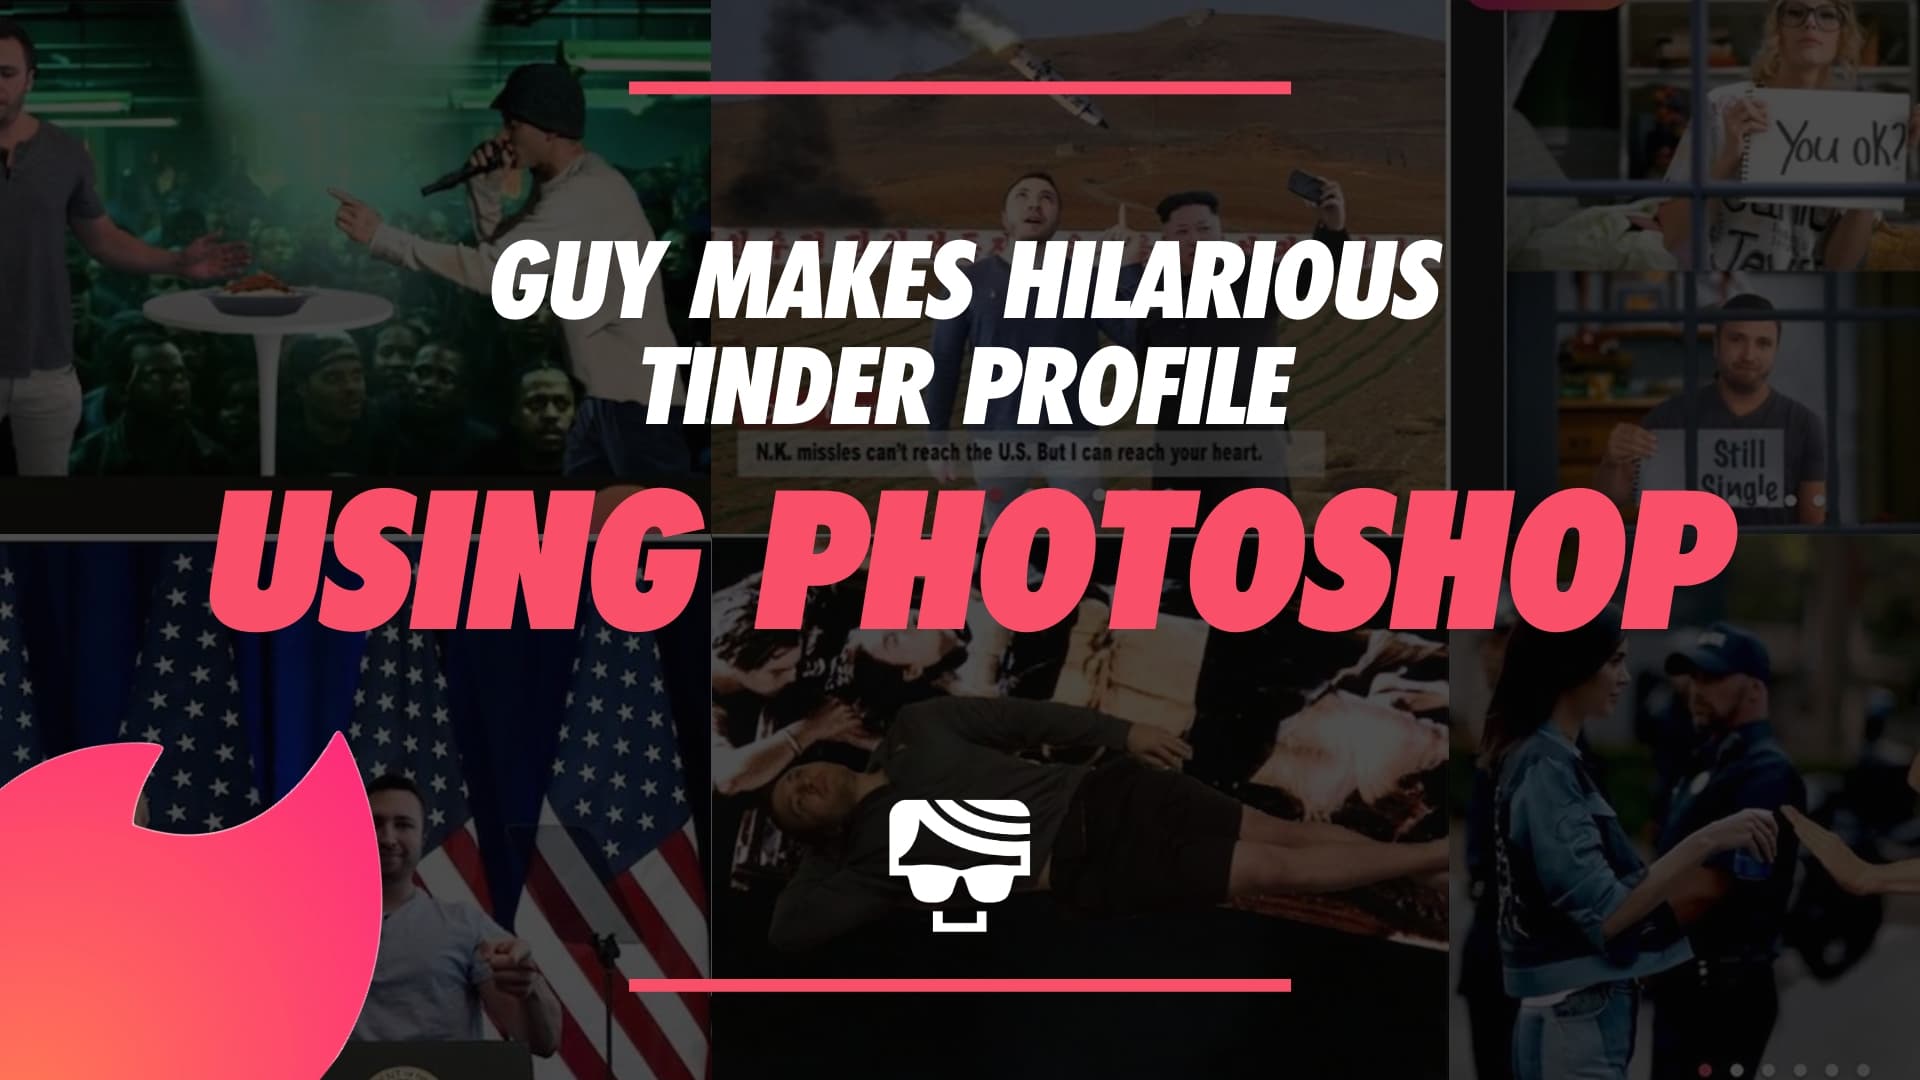 Guy Makes Hilarious Photoshopped Tinder Profile